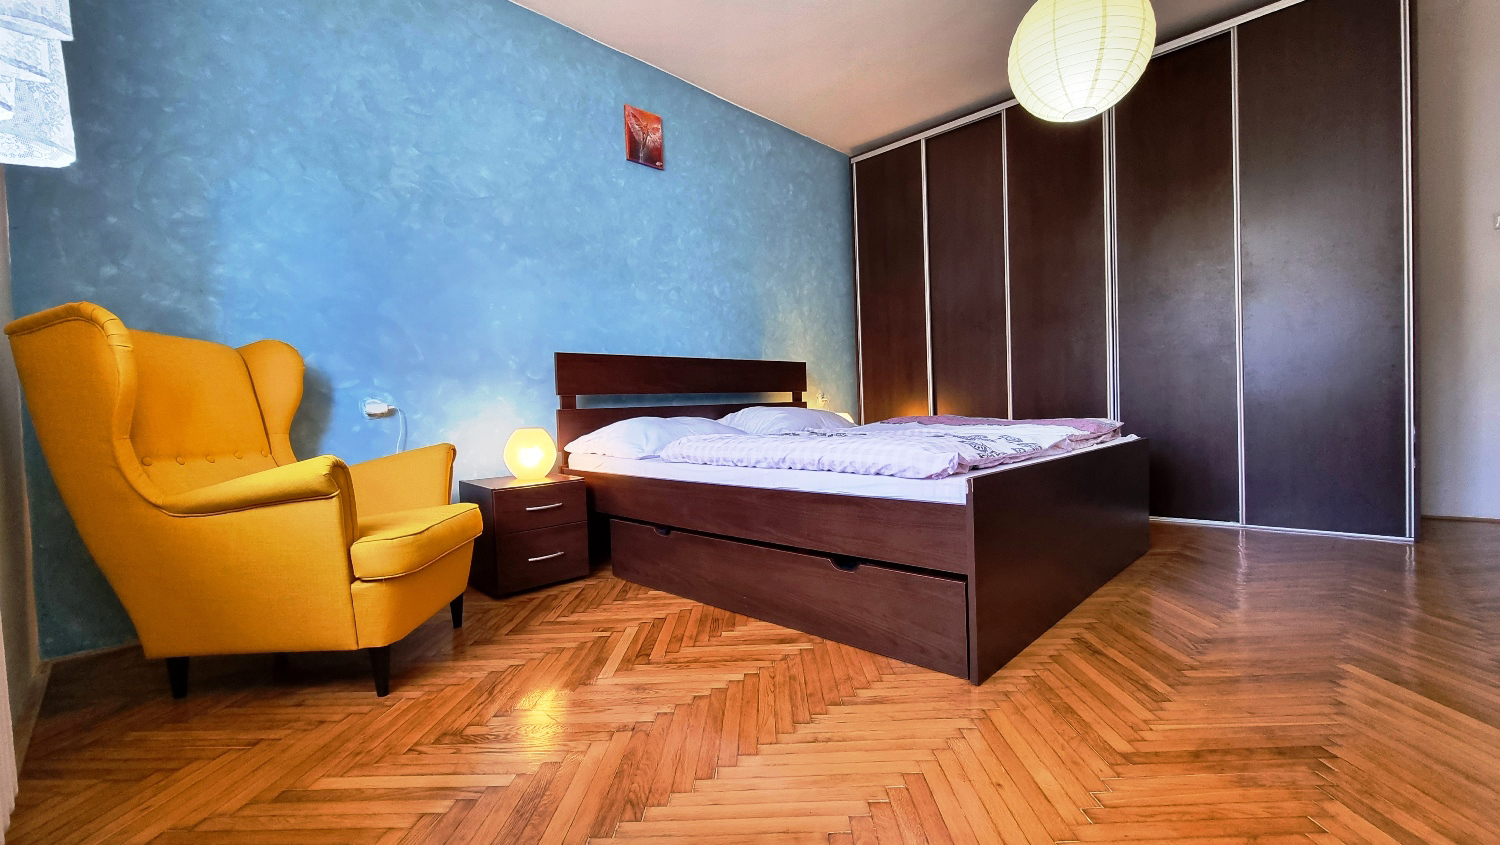 EXKLUZÍVNE! Veľký 6-izbový rodinný dom, výborná lokalita, predaj, Žilina - Bánová, Cena: 267.900 €